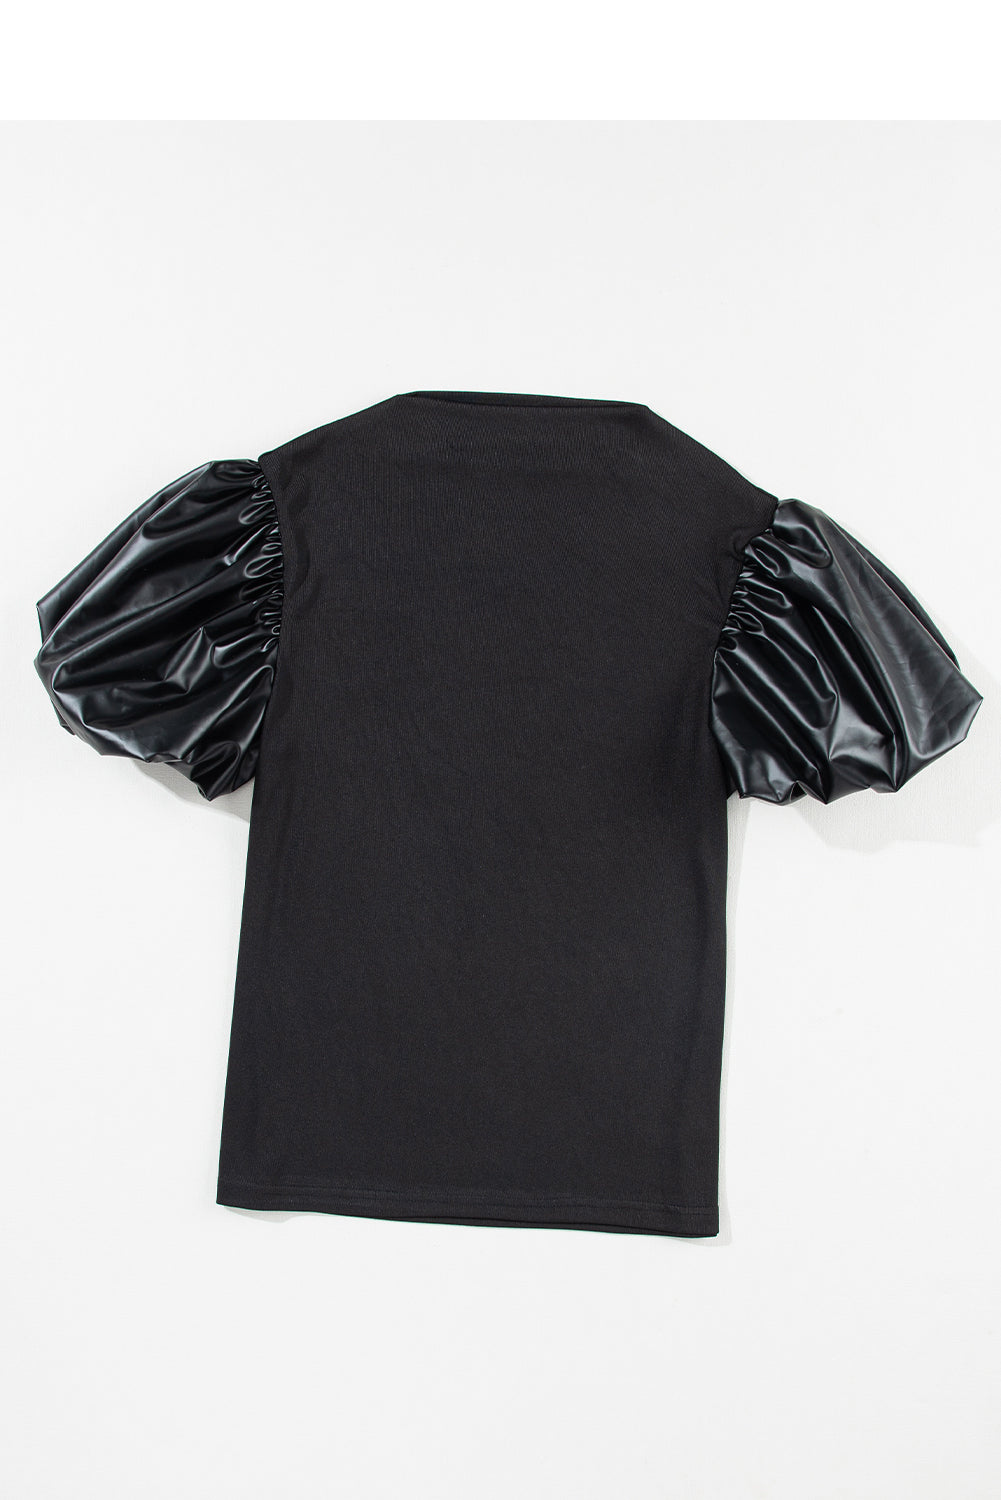 Crna majica s lažnim ovratnikom od puf kratke rukave od umjetne kože